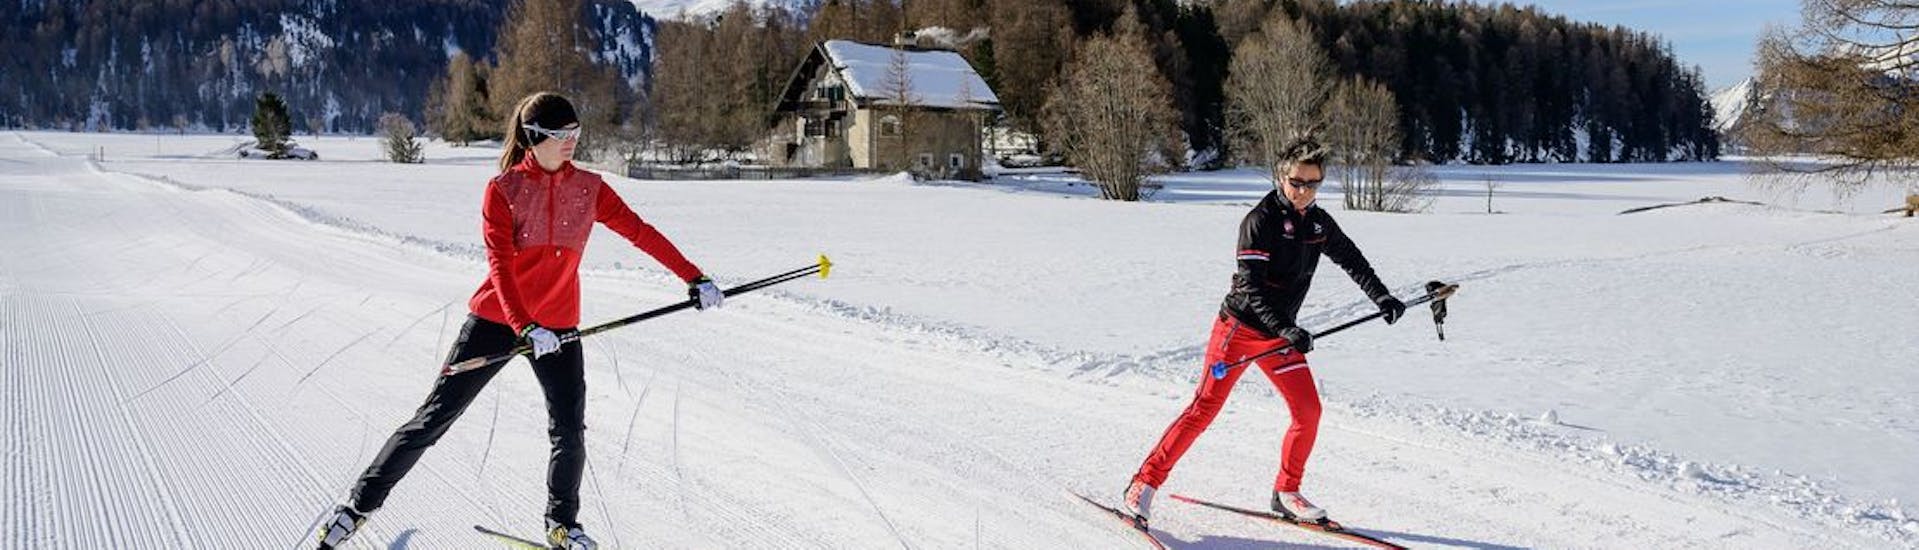 Ein Langläufer erlernt die klassische Technik im privaten Langlaufunterricht mit der Schweizer Skischule St. Moritz the Red Legends.